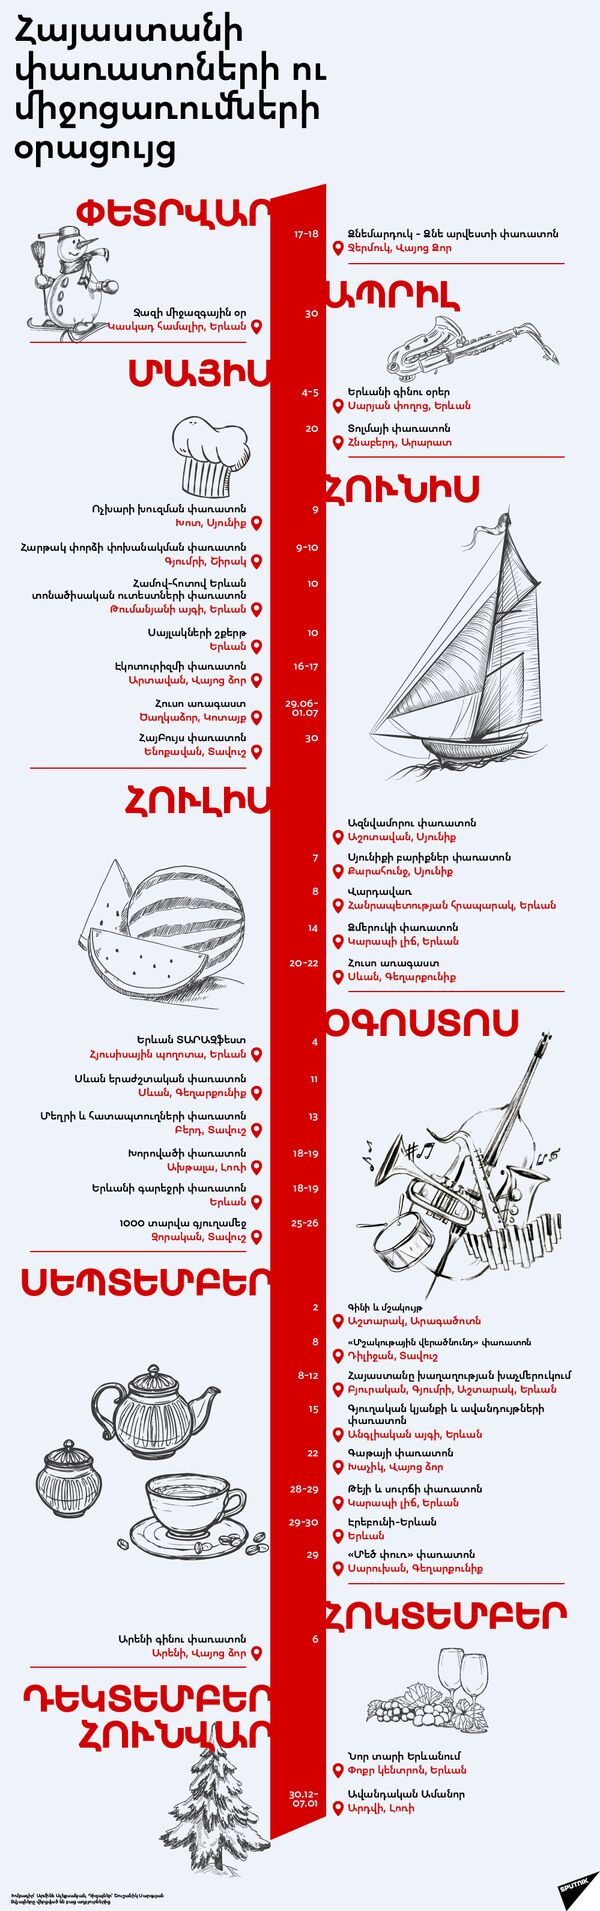 Հայաստանի փառատոների ու միջոցառումների օրացույց - Sputnik Արմենիա